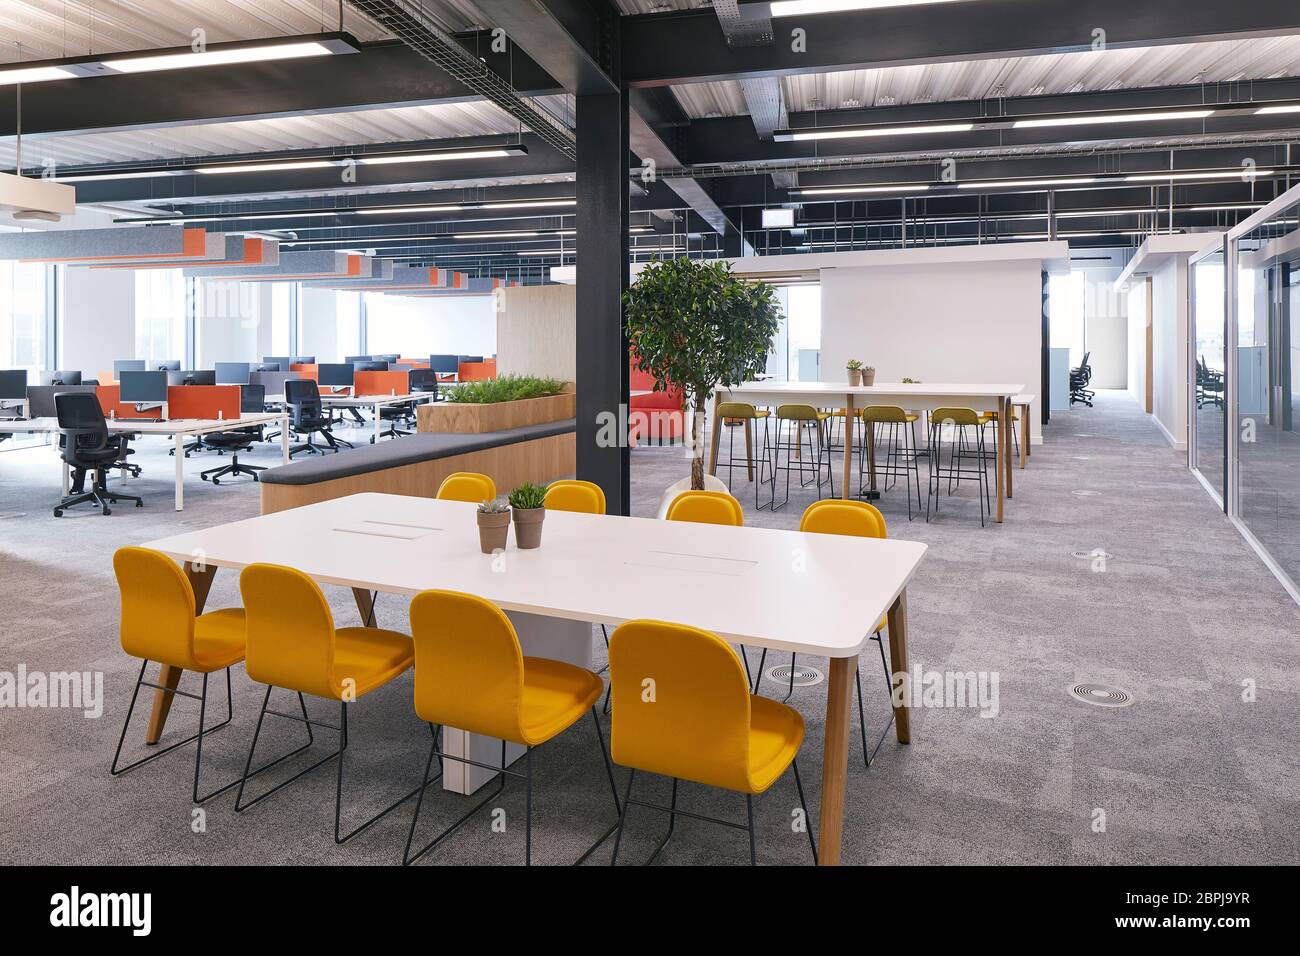 Moderne britische Büroeinrichtung mit Möbeln in Primärfarben. Niederlassung in Großbritannien, London, Großbritannien. Architekt: IOR, 2019. Stockfoto